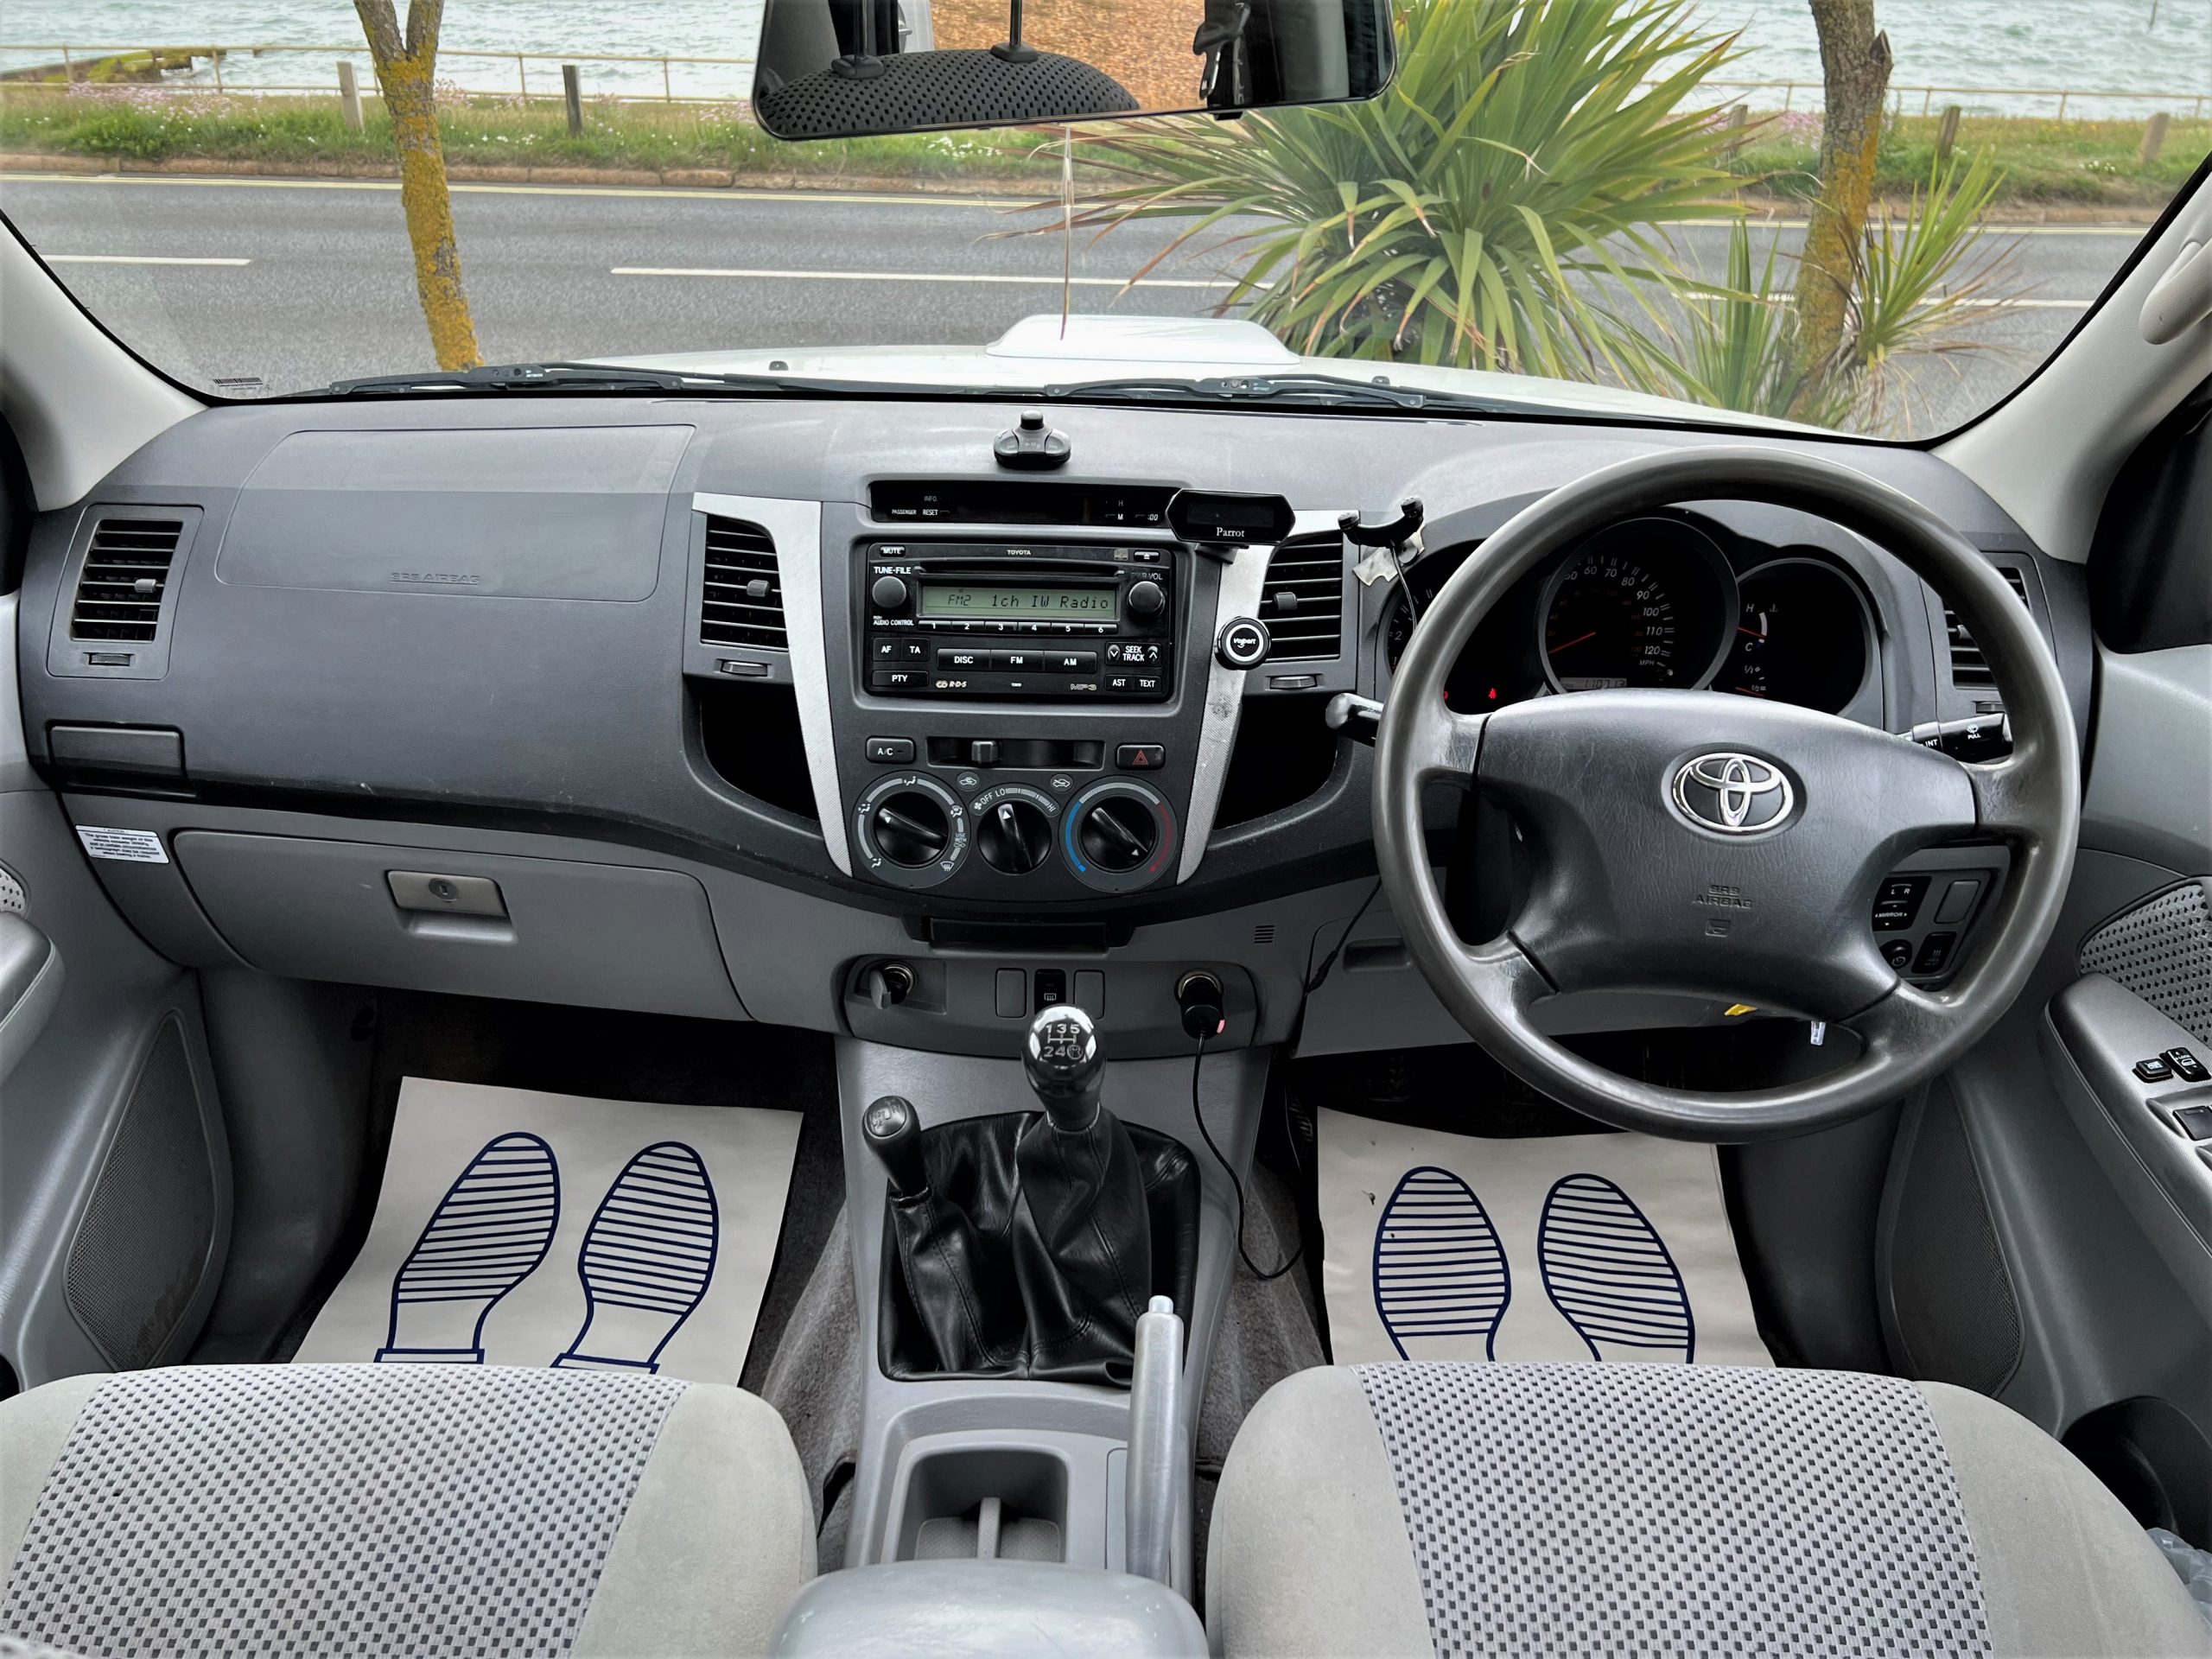 2009 Toyota Hilux HL3 3.0 D-4D 4WD Double Cab Pick Up